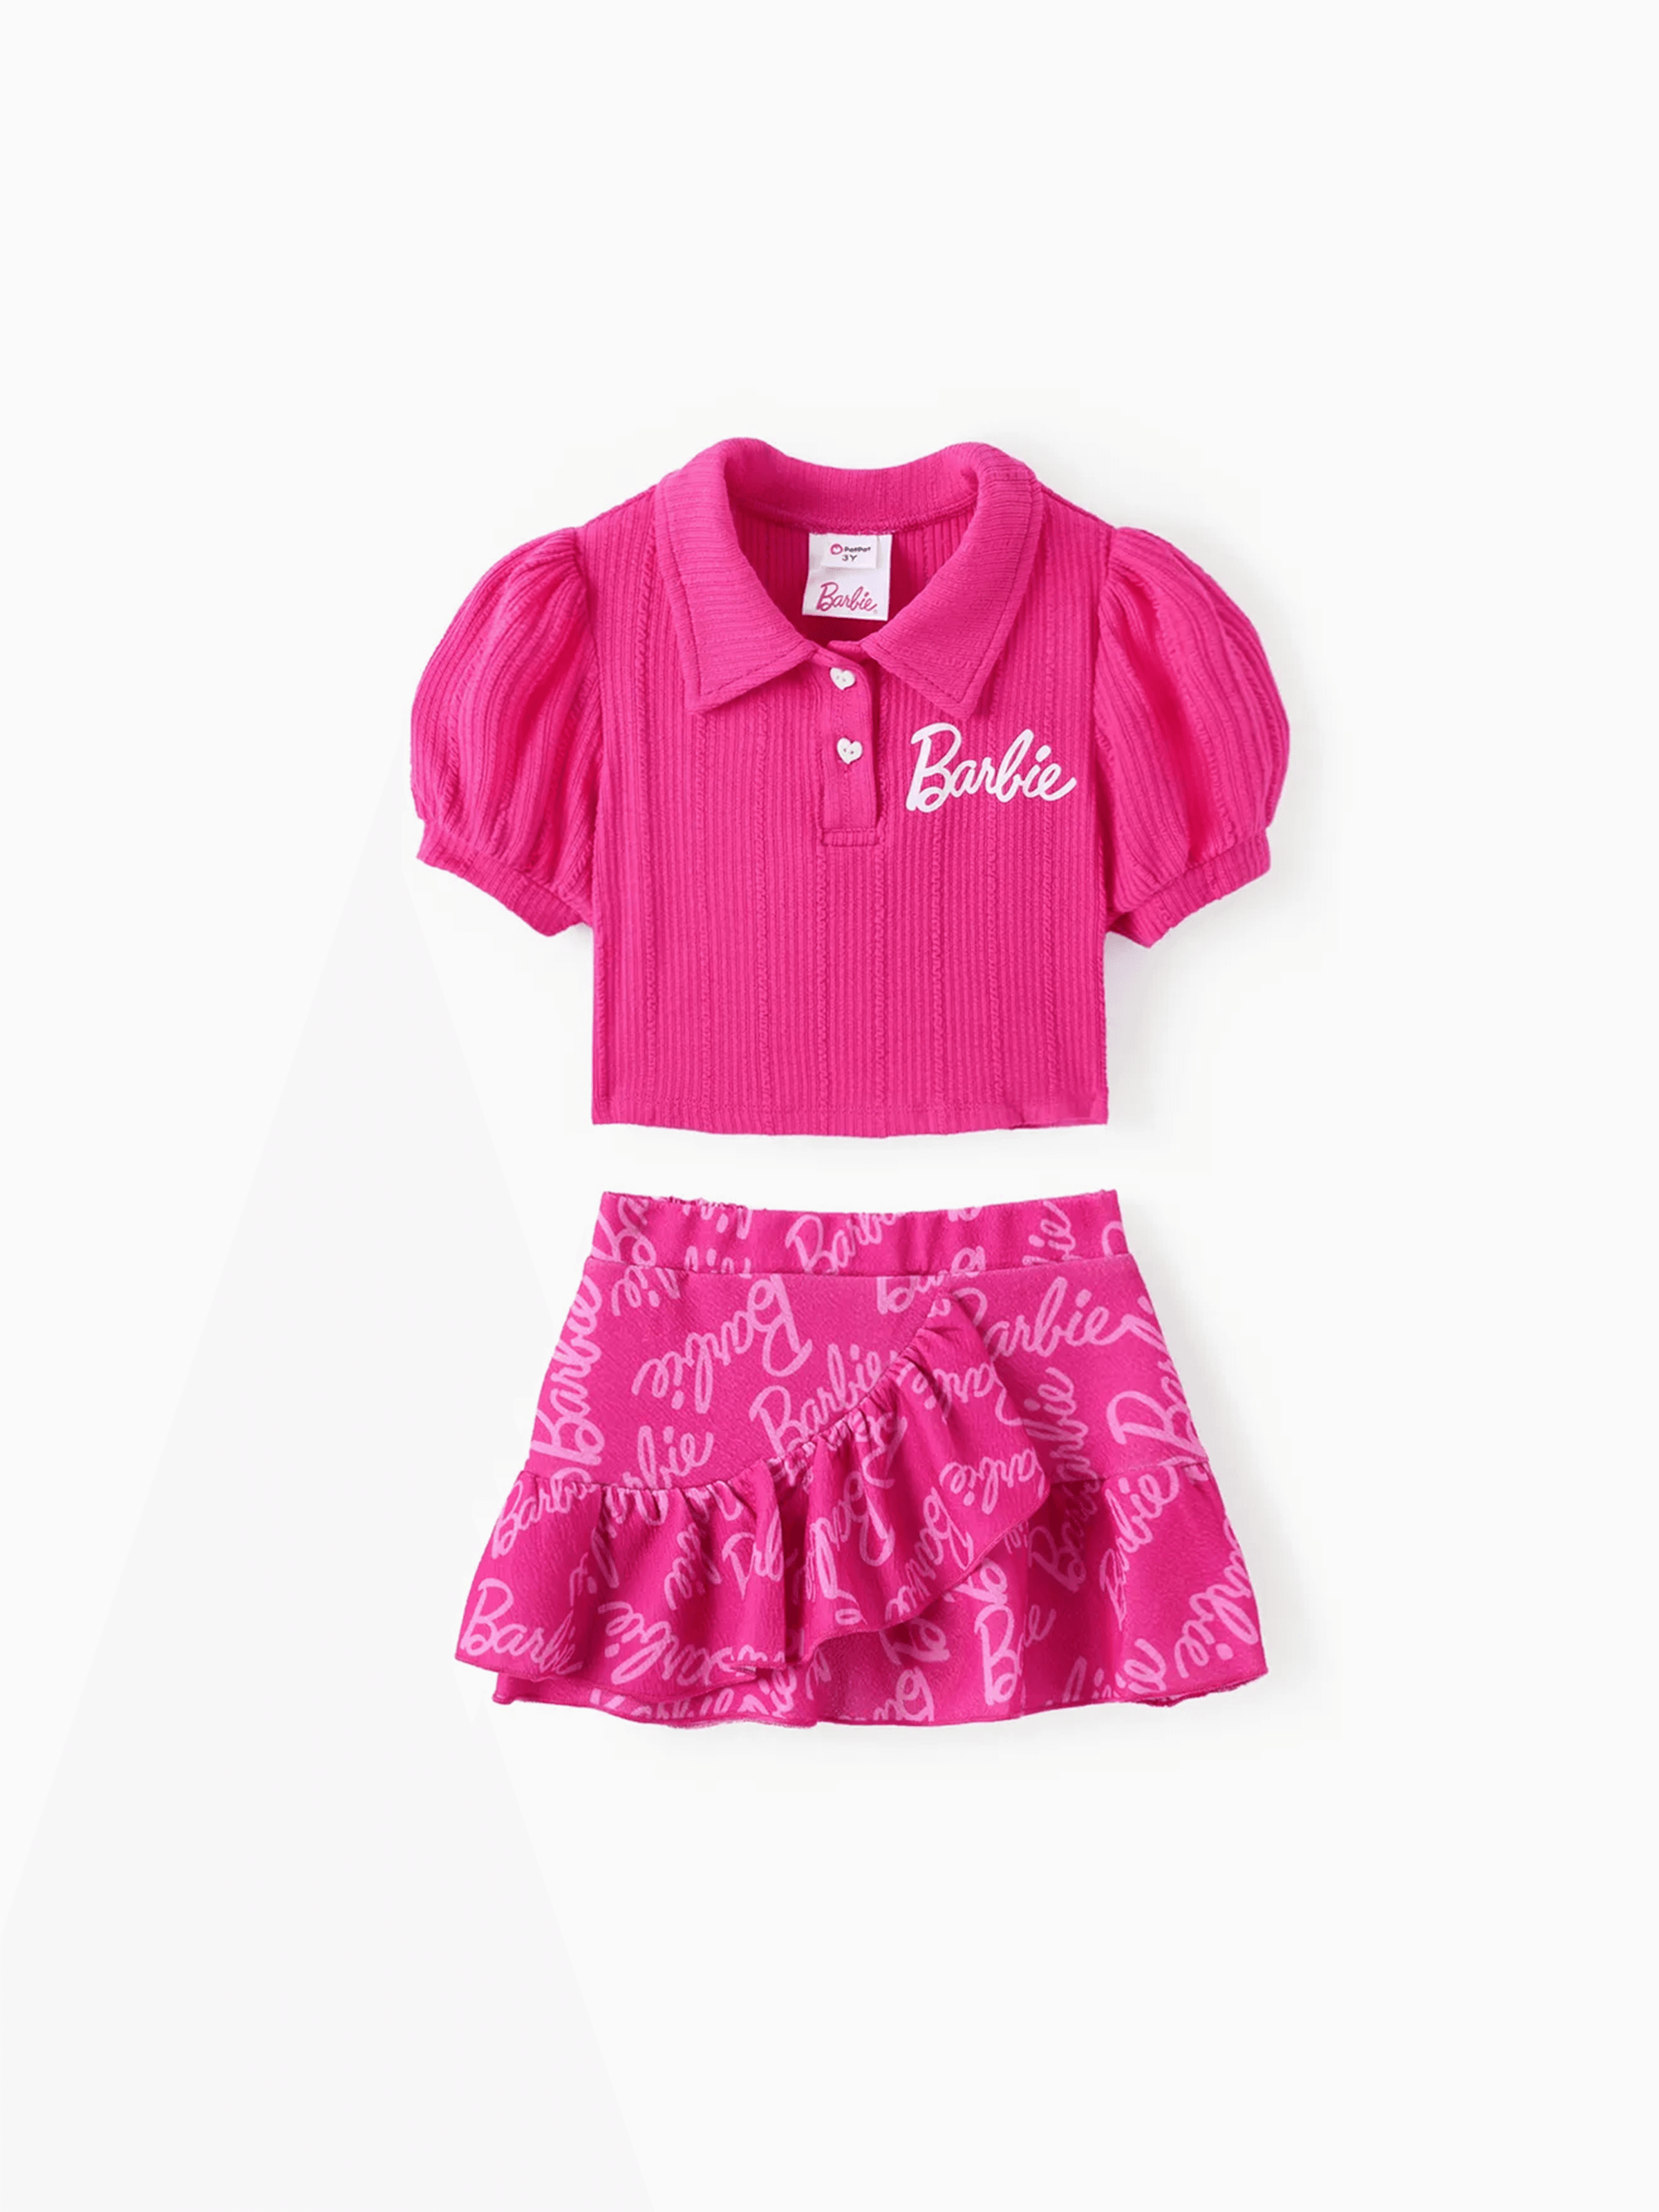 芭比娃娃 2 件裝幼兒/兒童女孩字母印花泡泡袖上衣搭配通體印花裙套裝